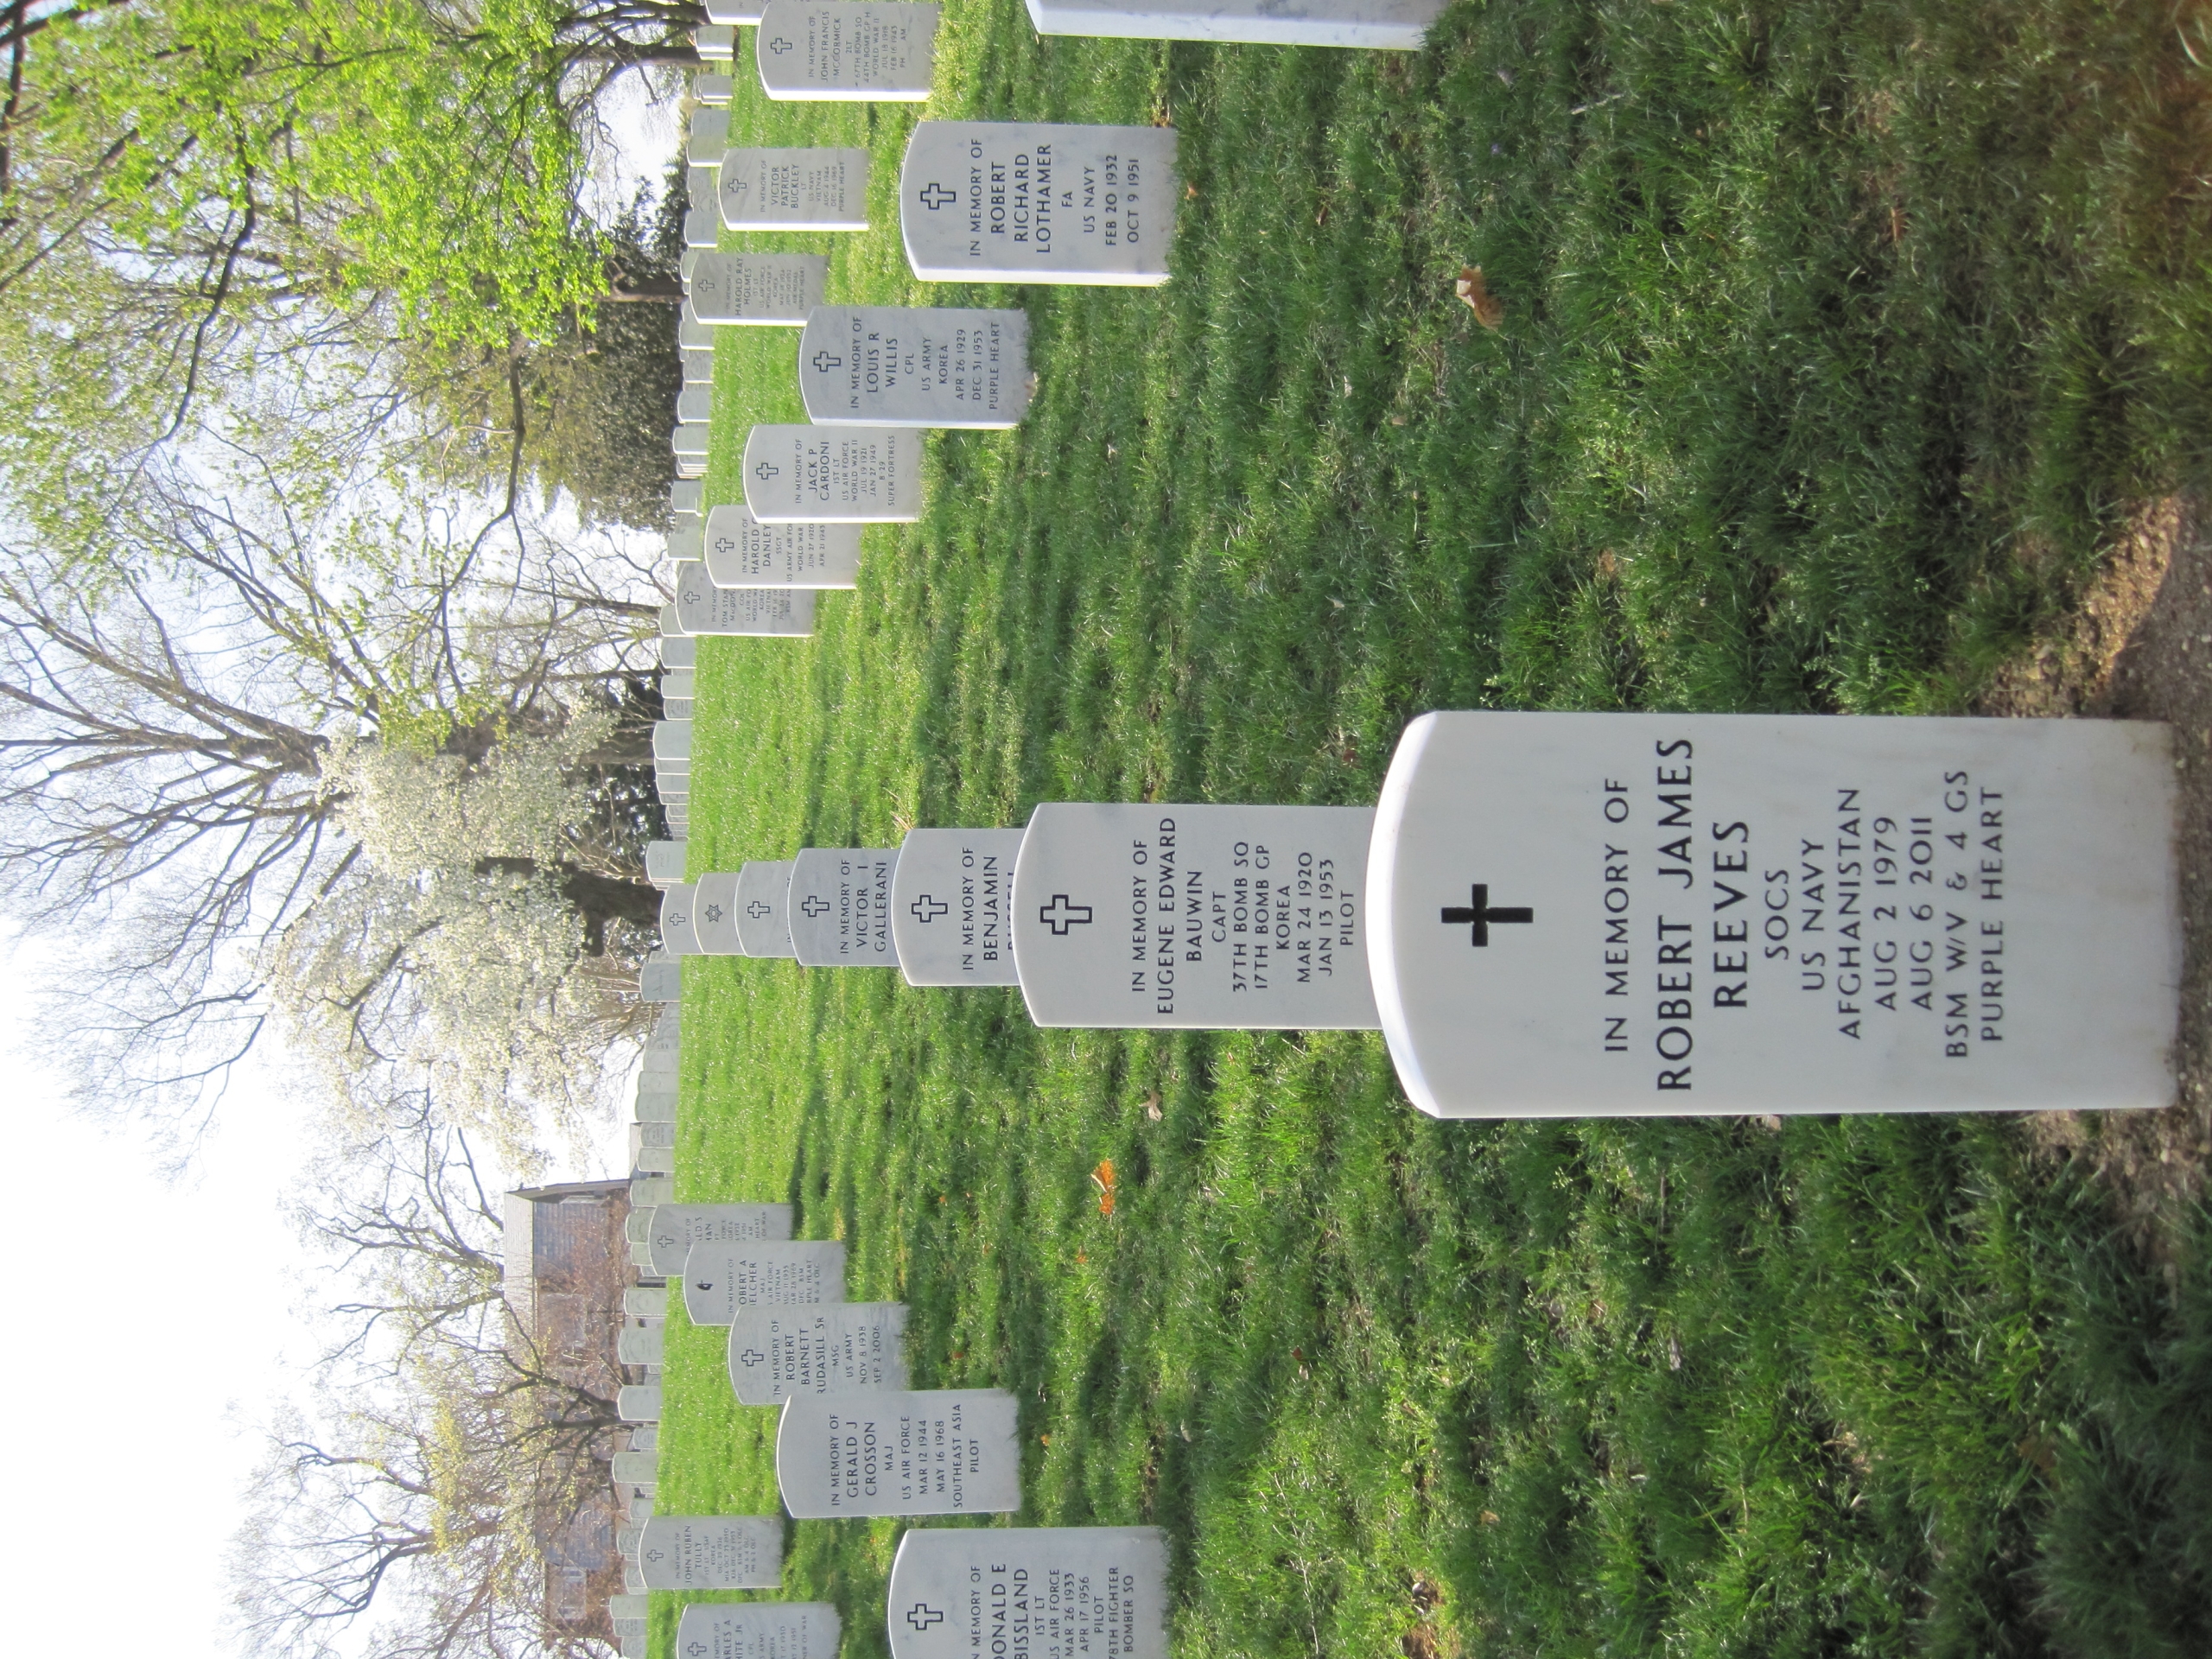 rjreeves-gravesite-photo-by-eileen-horan-april-2012-001